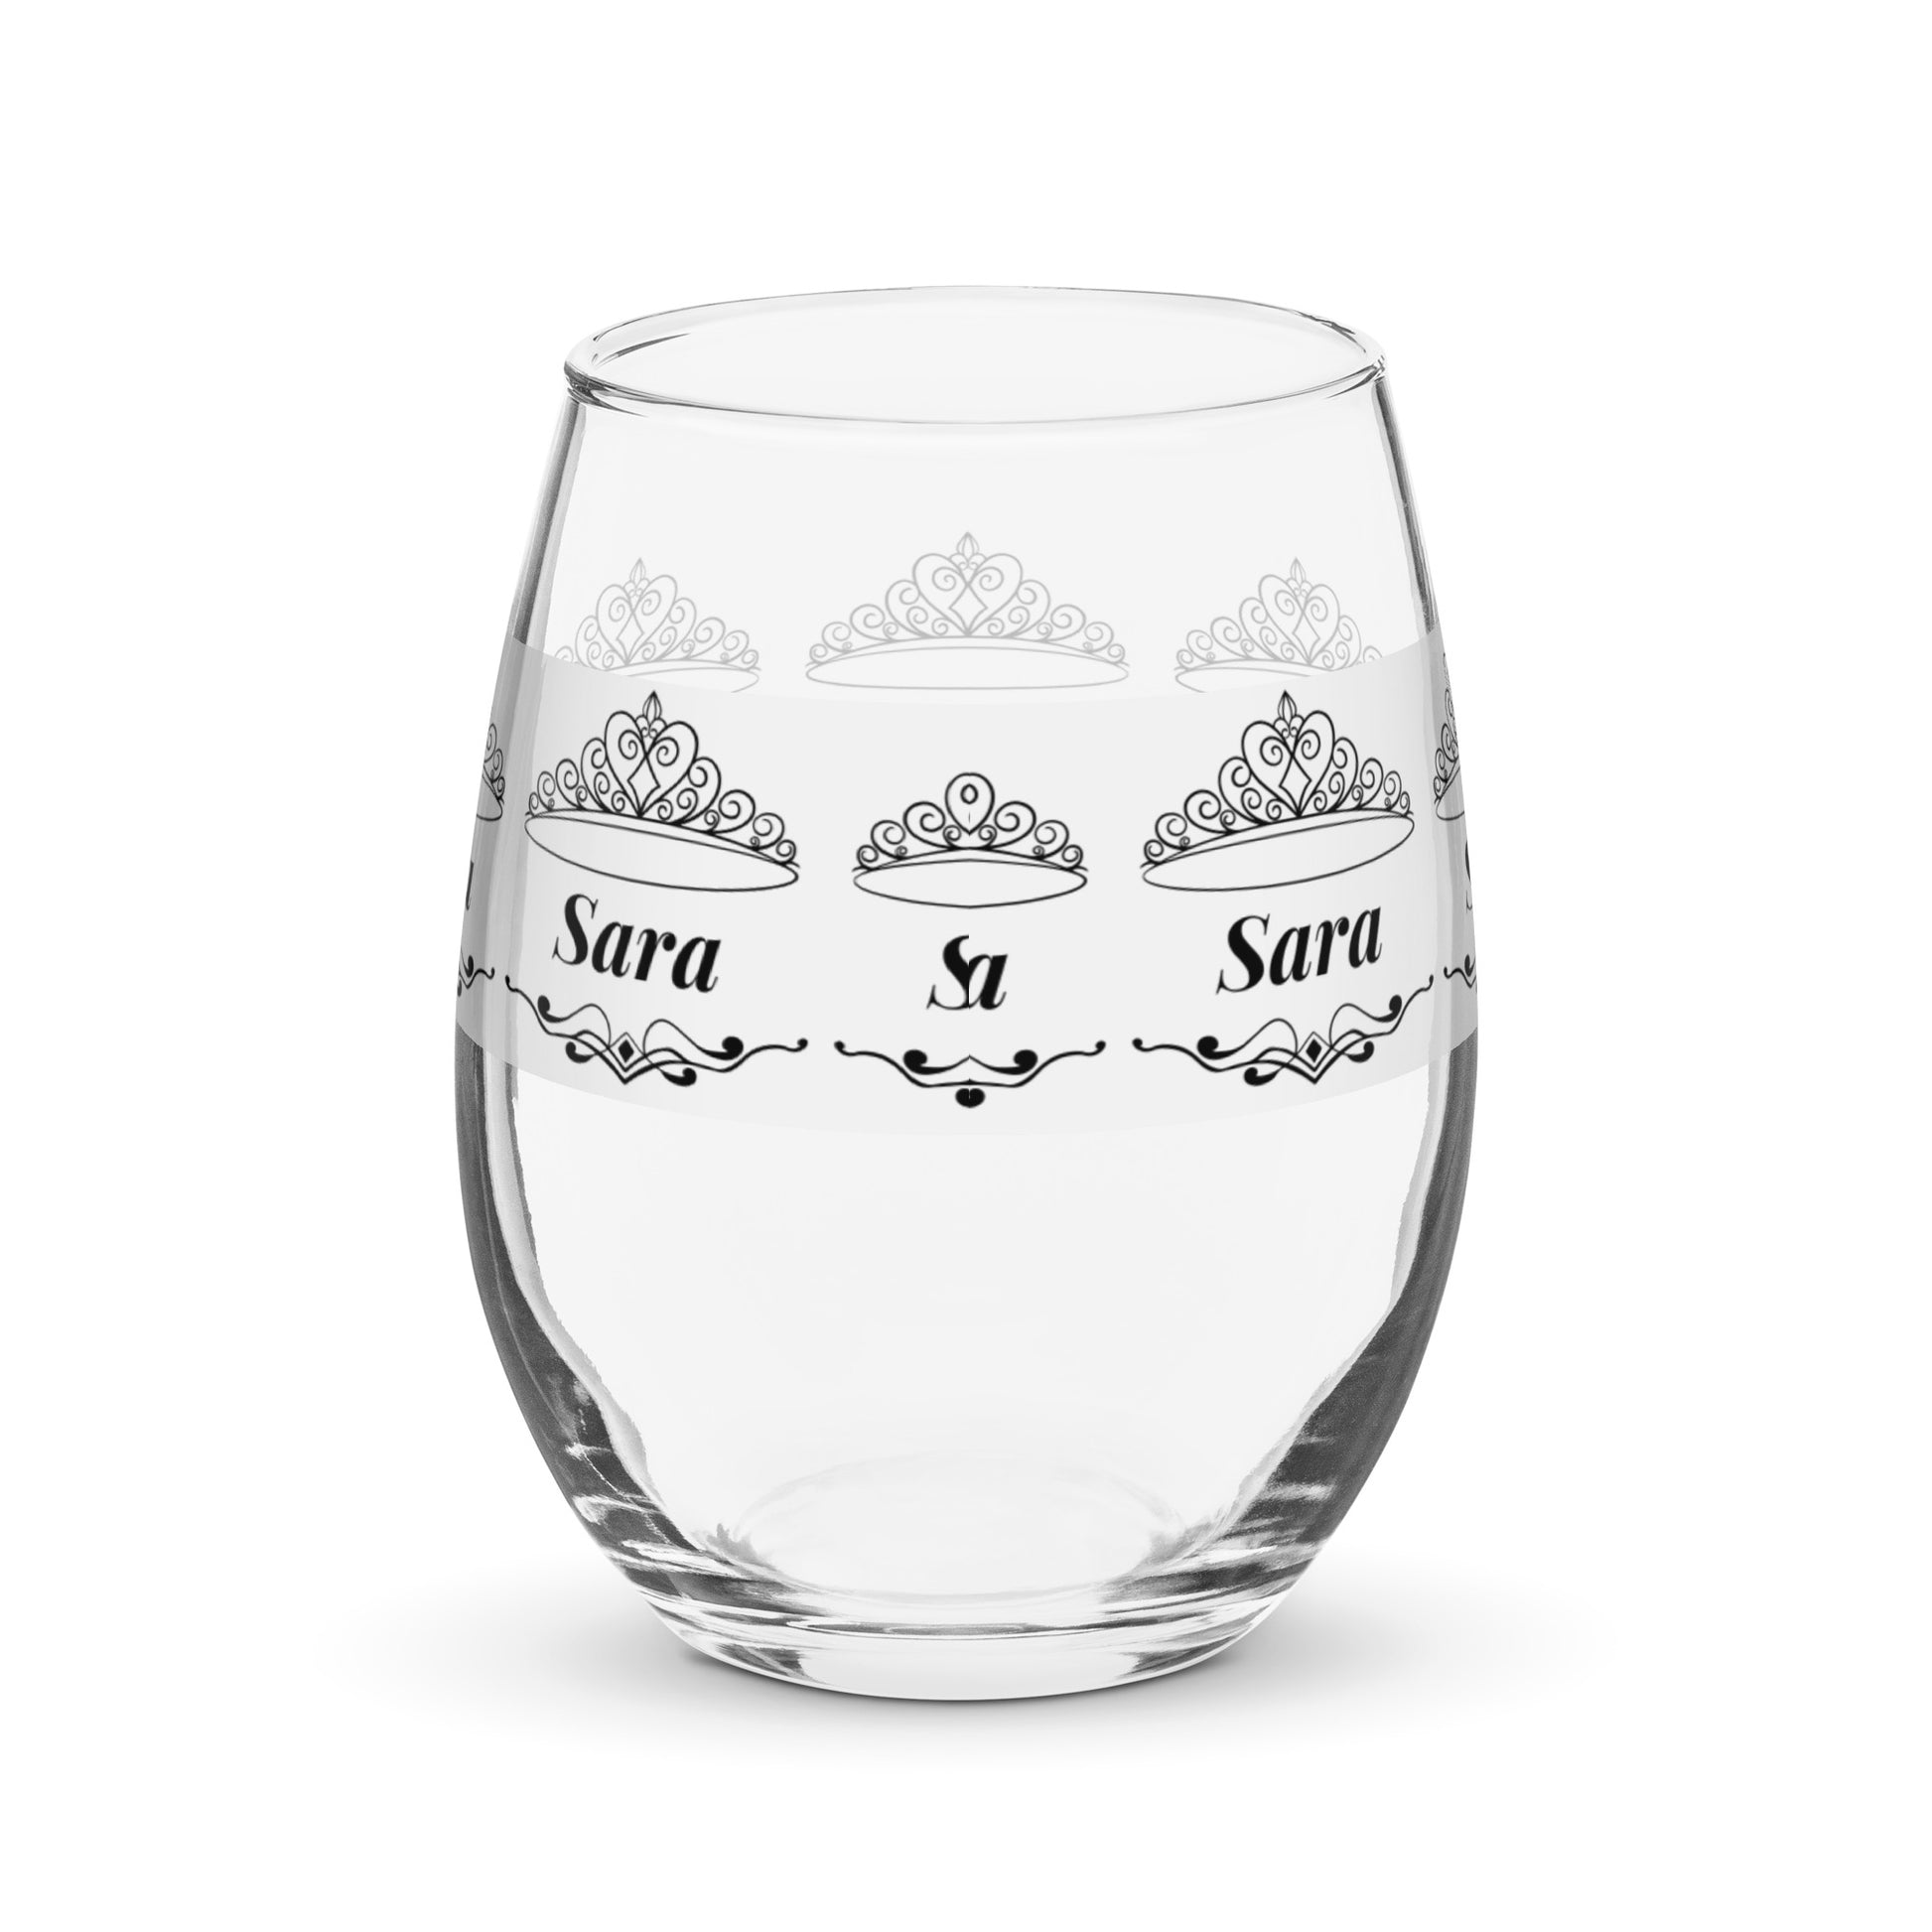 nombre copa de vino copa de vino personalizada Copa de vino Sara